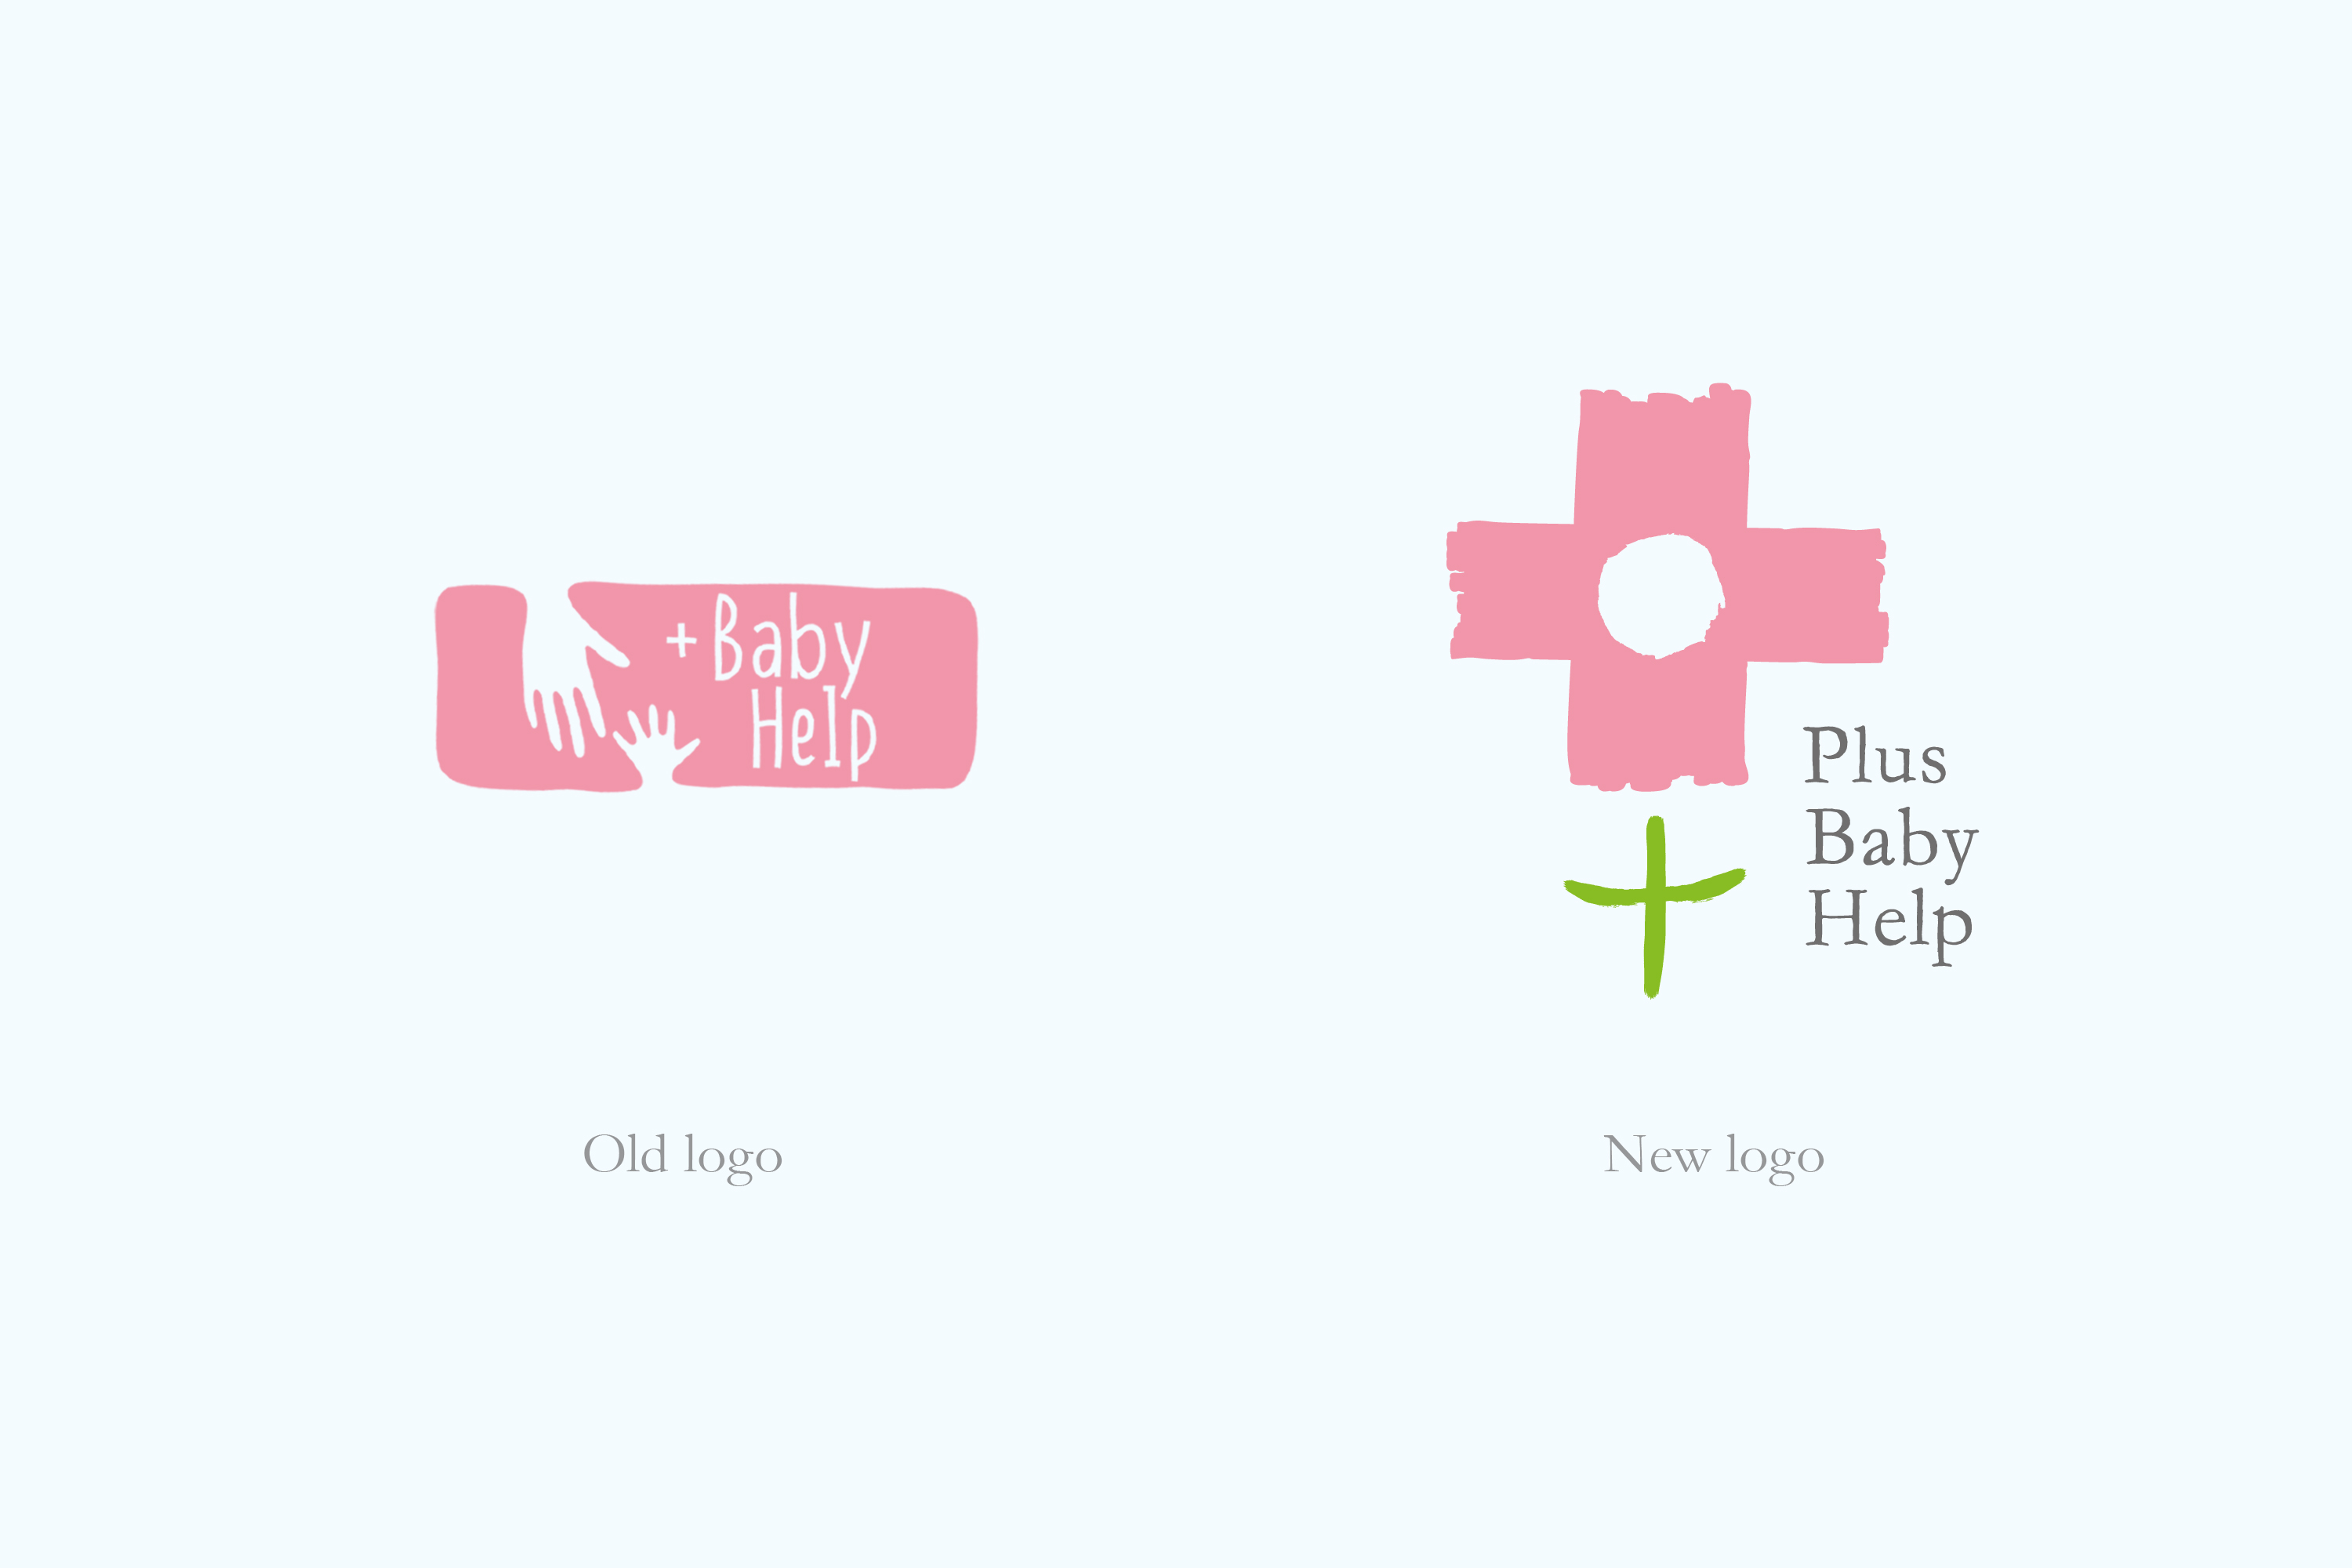 ребрендинг благотворительного фонда Плюс Помощь Детям, разработка стратегии, логотипа и фирменного стиля, креатив, брендинговое агентство Depot WPF, Plus Baby Help foundation rebranding, identity that turns minus into plus